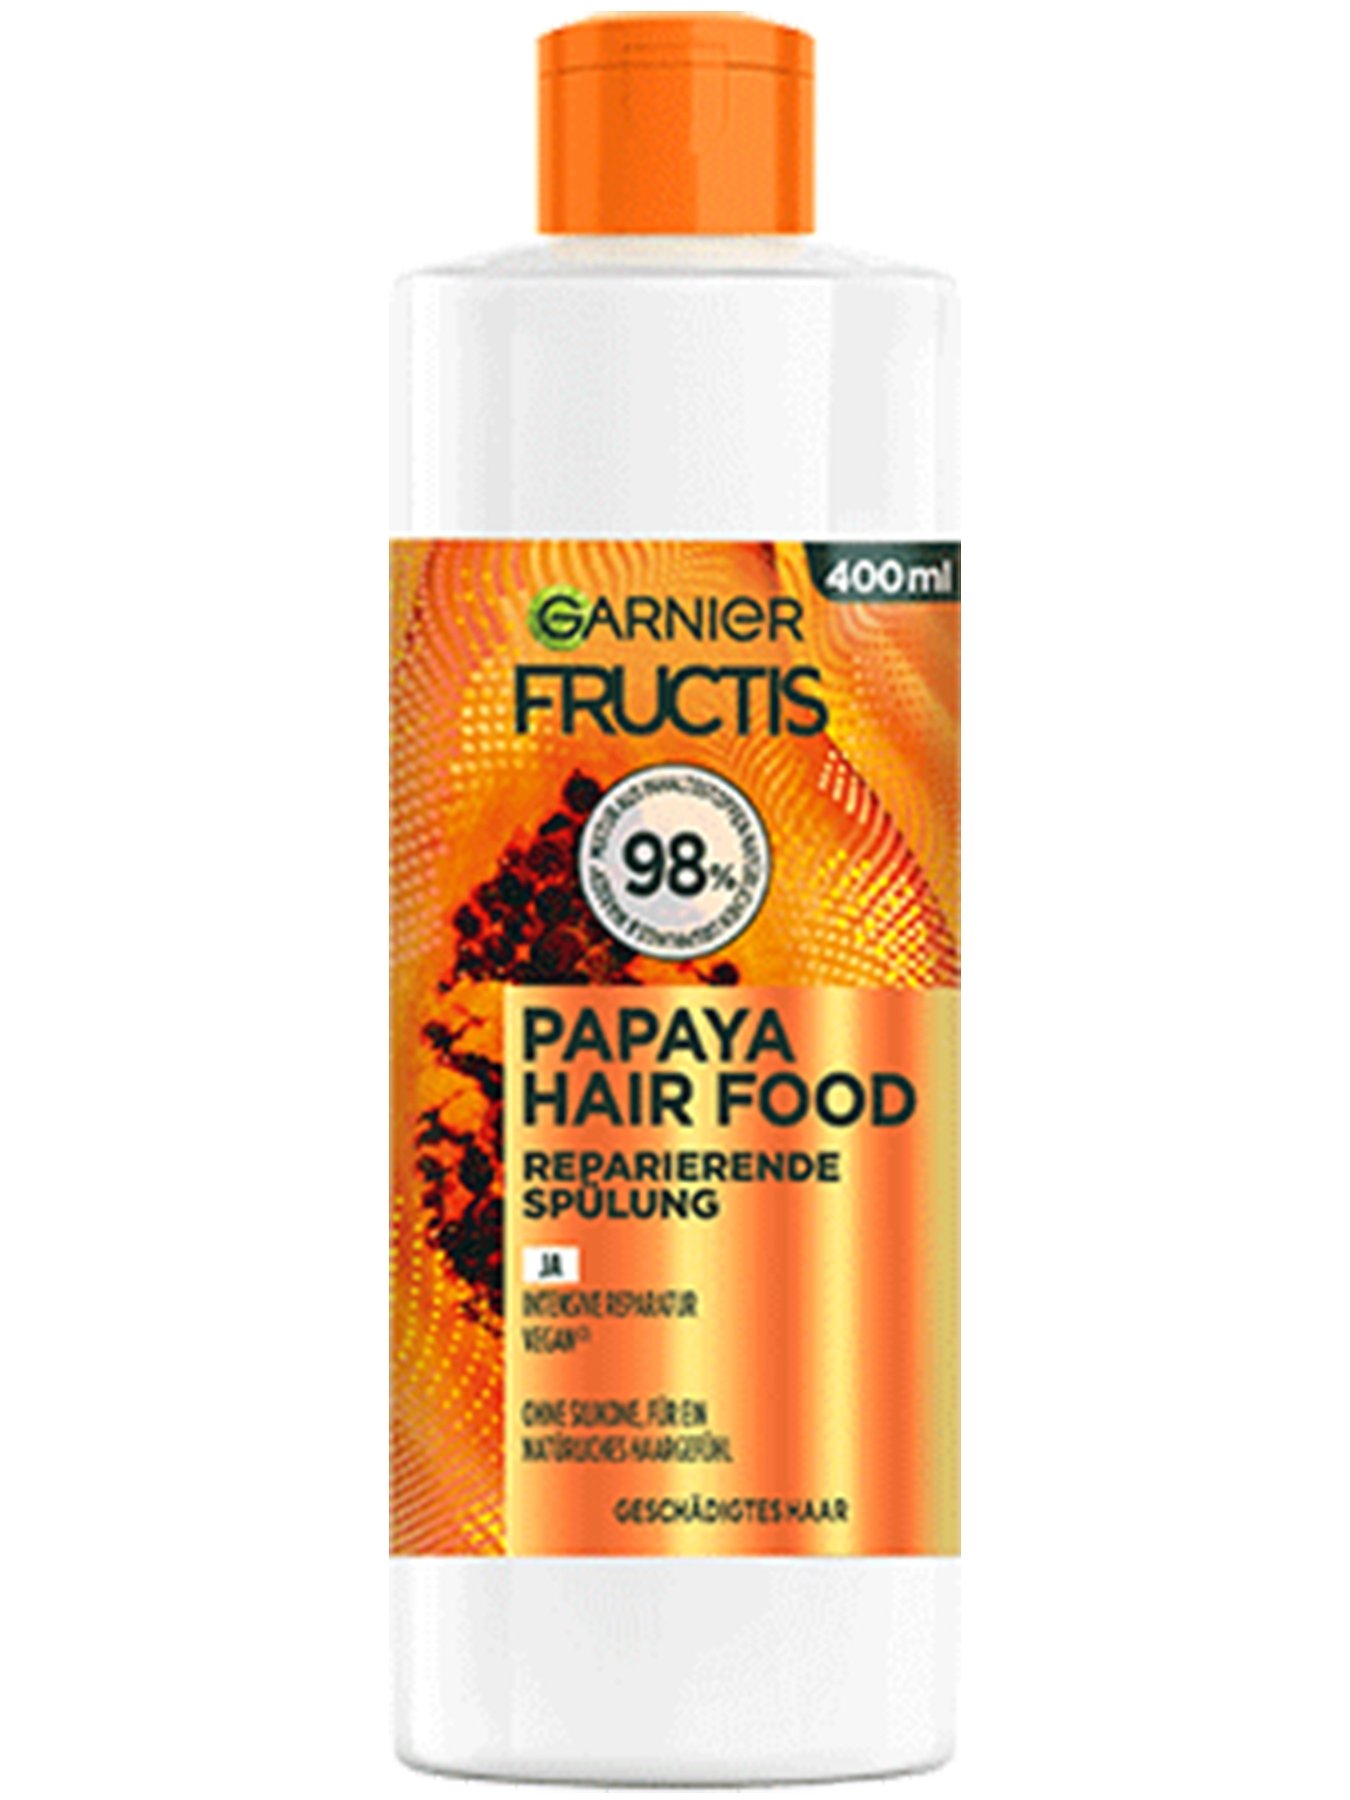 Fructis Papaya Hair Food Spülung - Produktabbildung